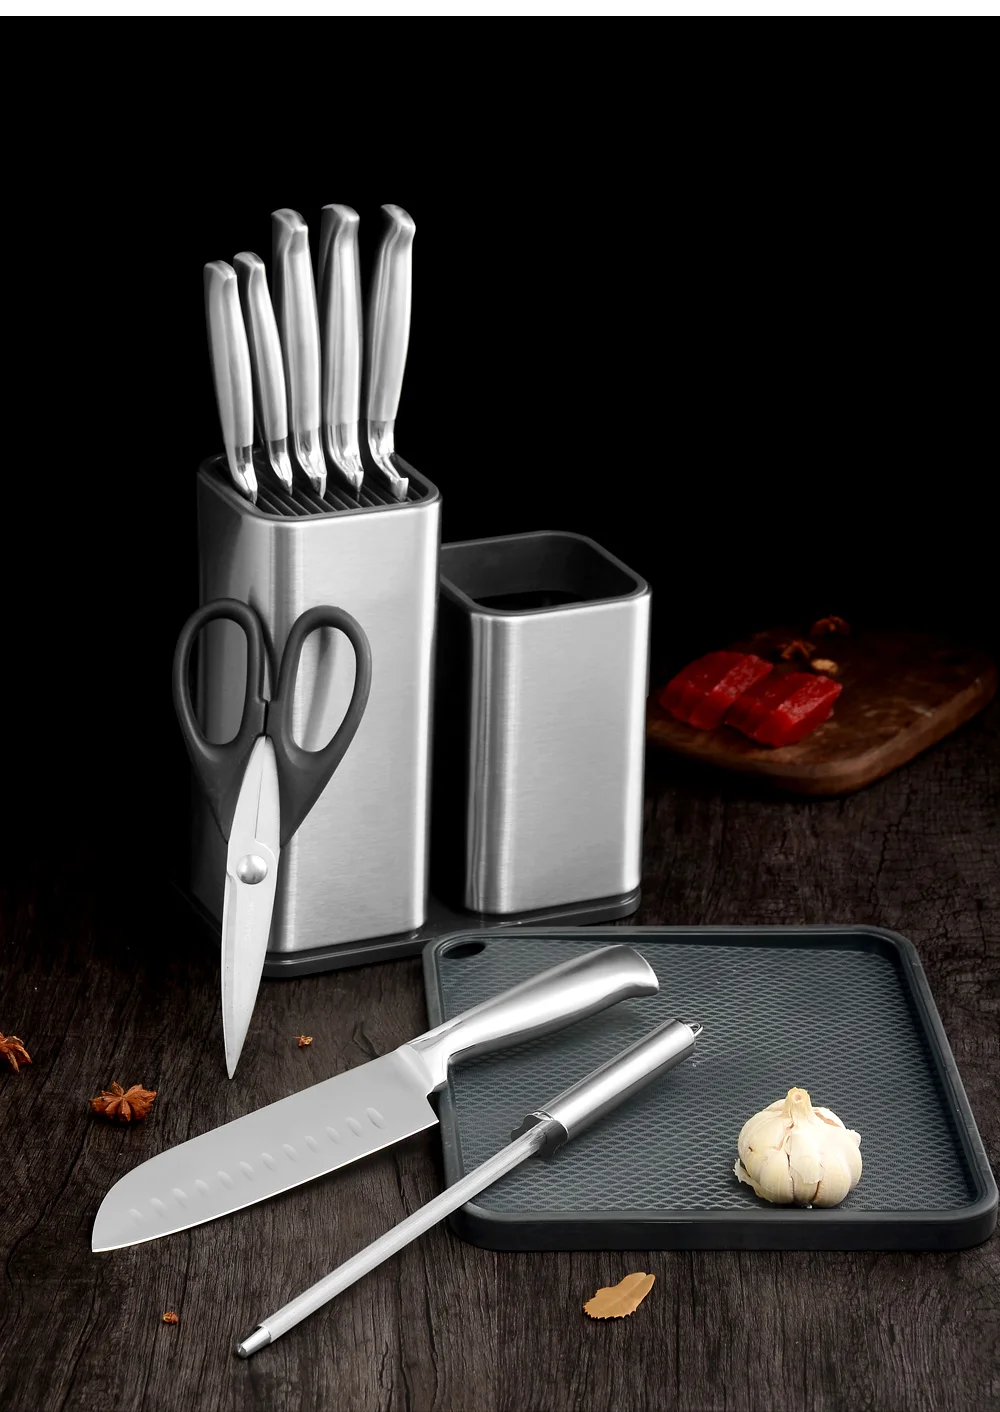 XYJ нож из нержавеющей стали разделочная кухонная доска для резки мяса мясника блок антимикробный сверхмощный сервировочный